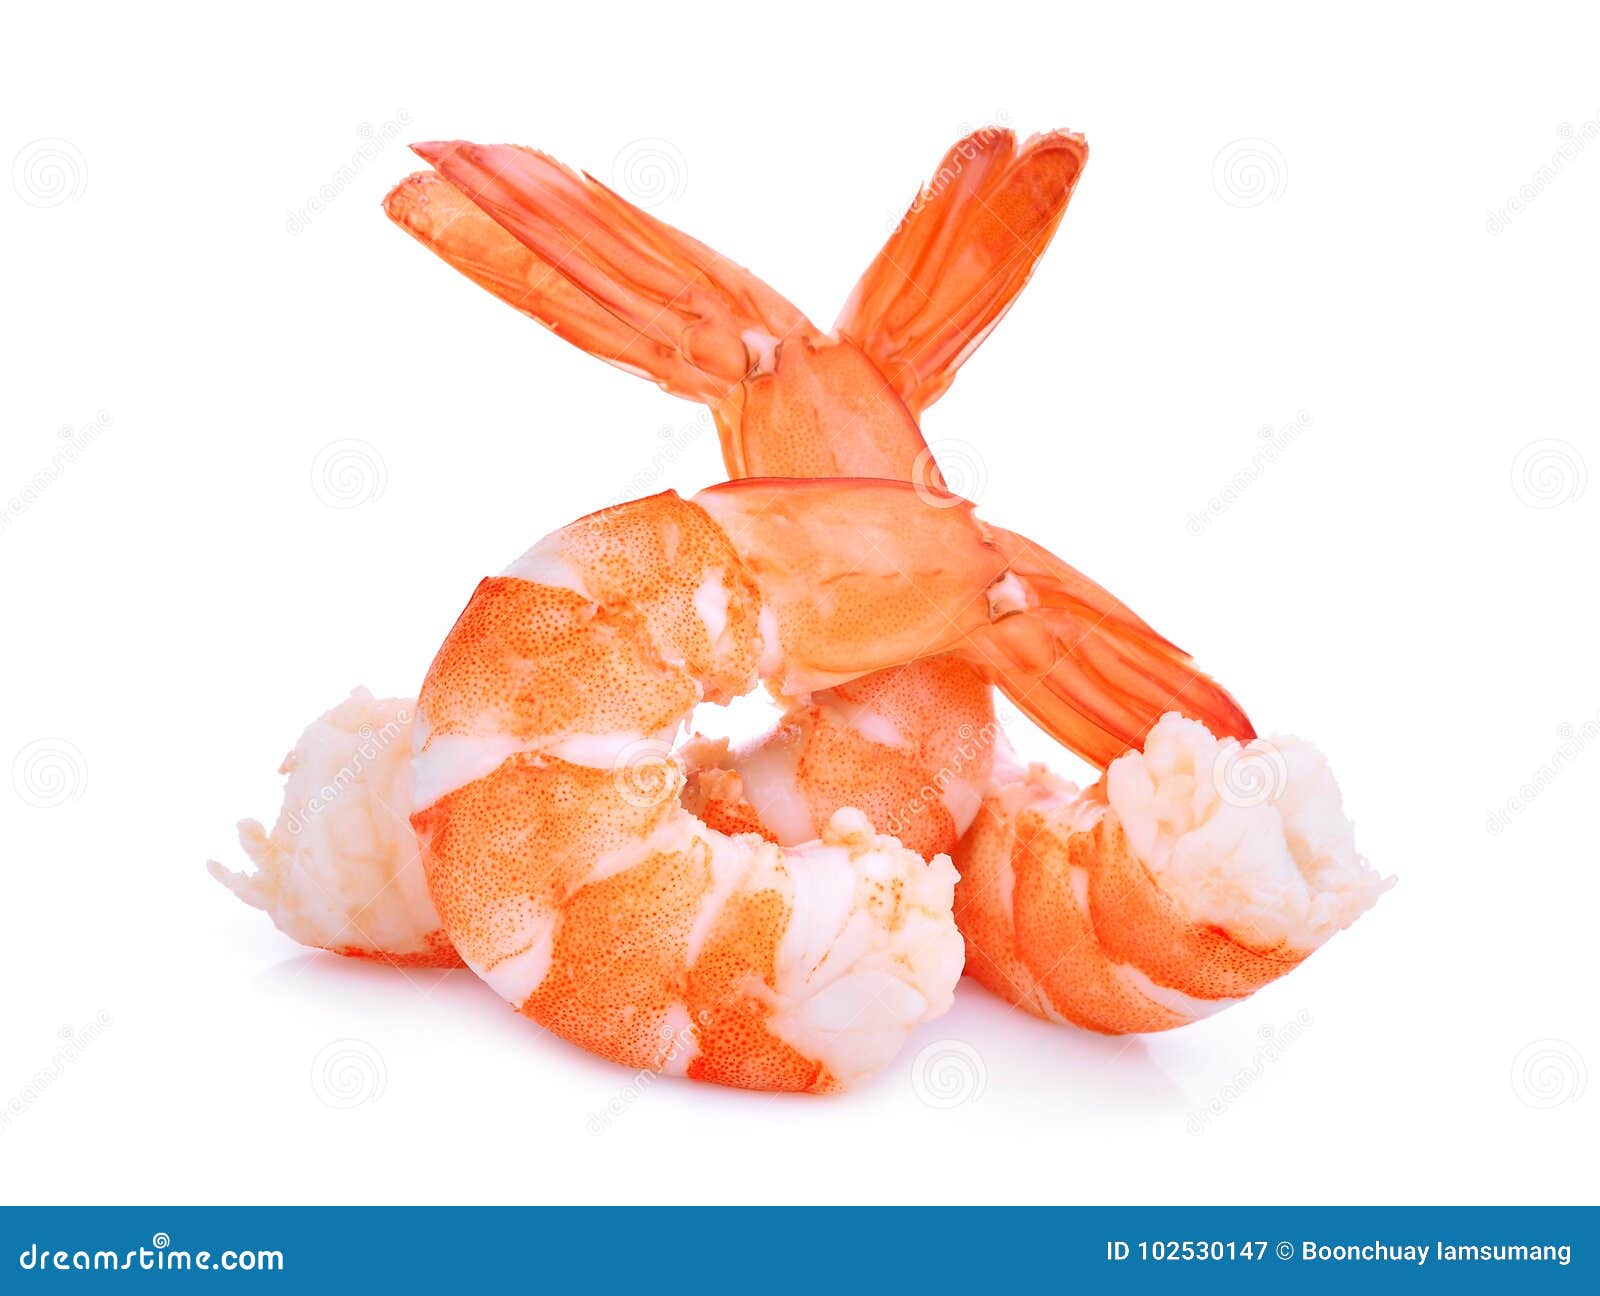 shrimps  on white